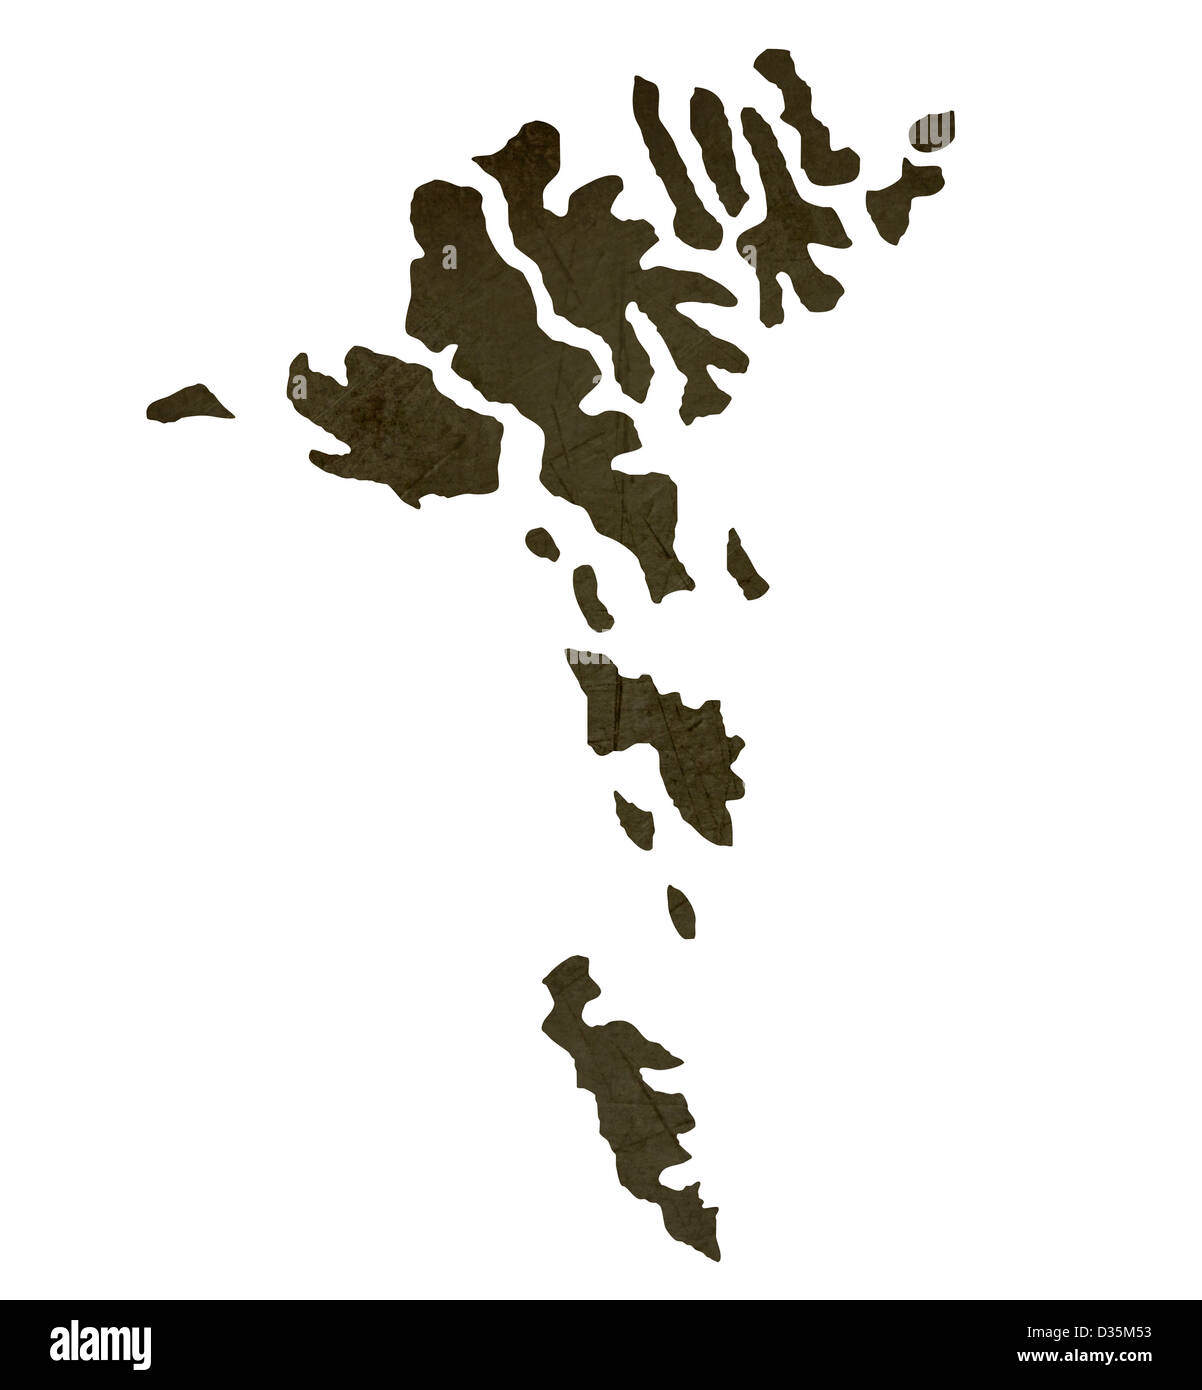 Dunkle Silhouette und strukturierte Karte der Färöer Inseln isoliert auf weißem Hintergrund. Stockfoto